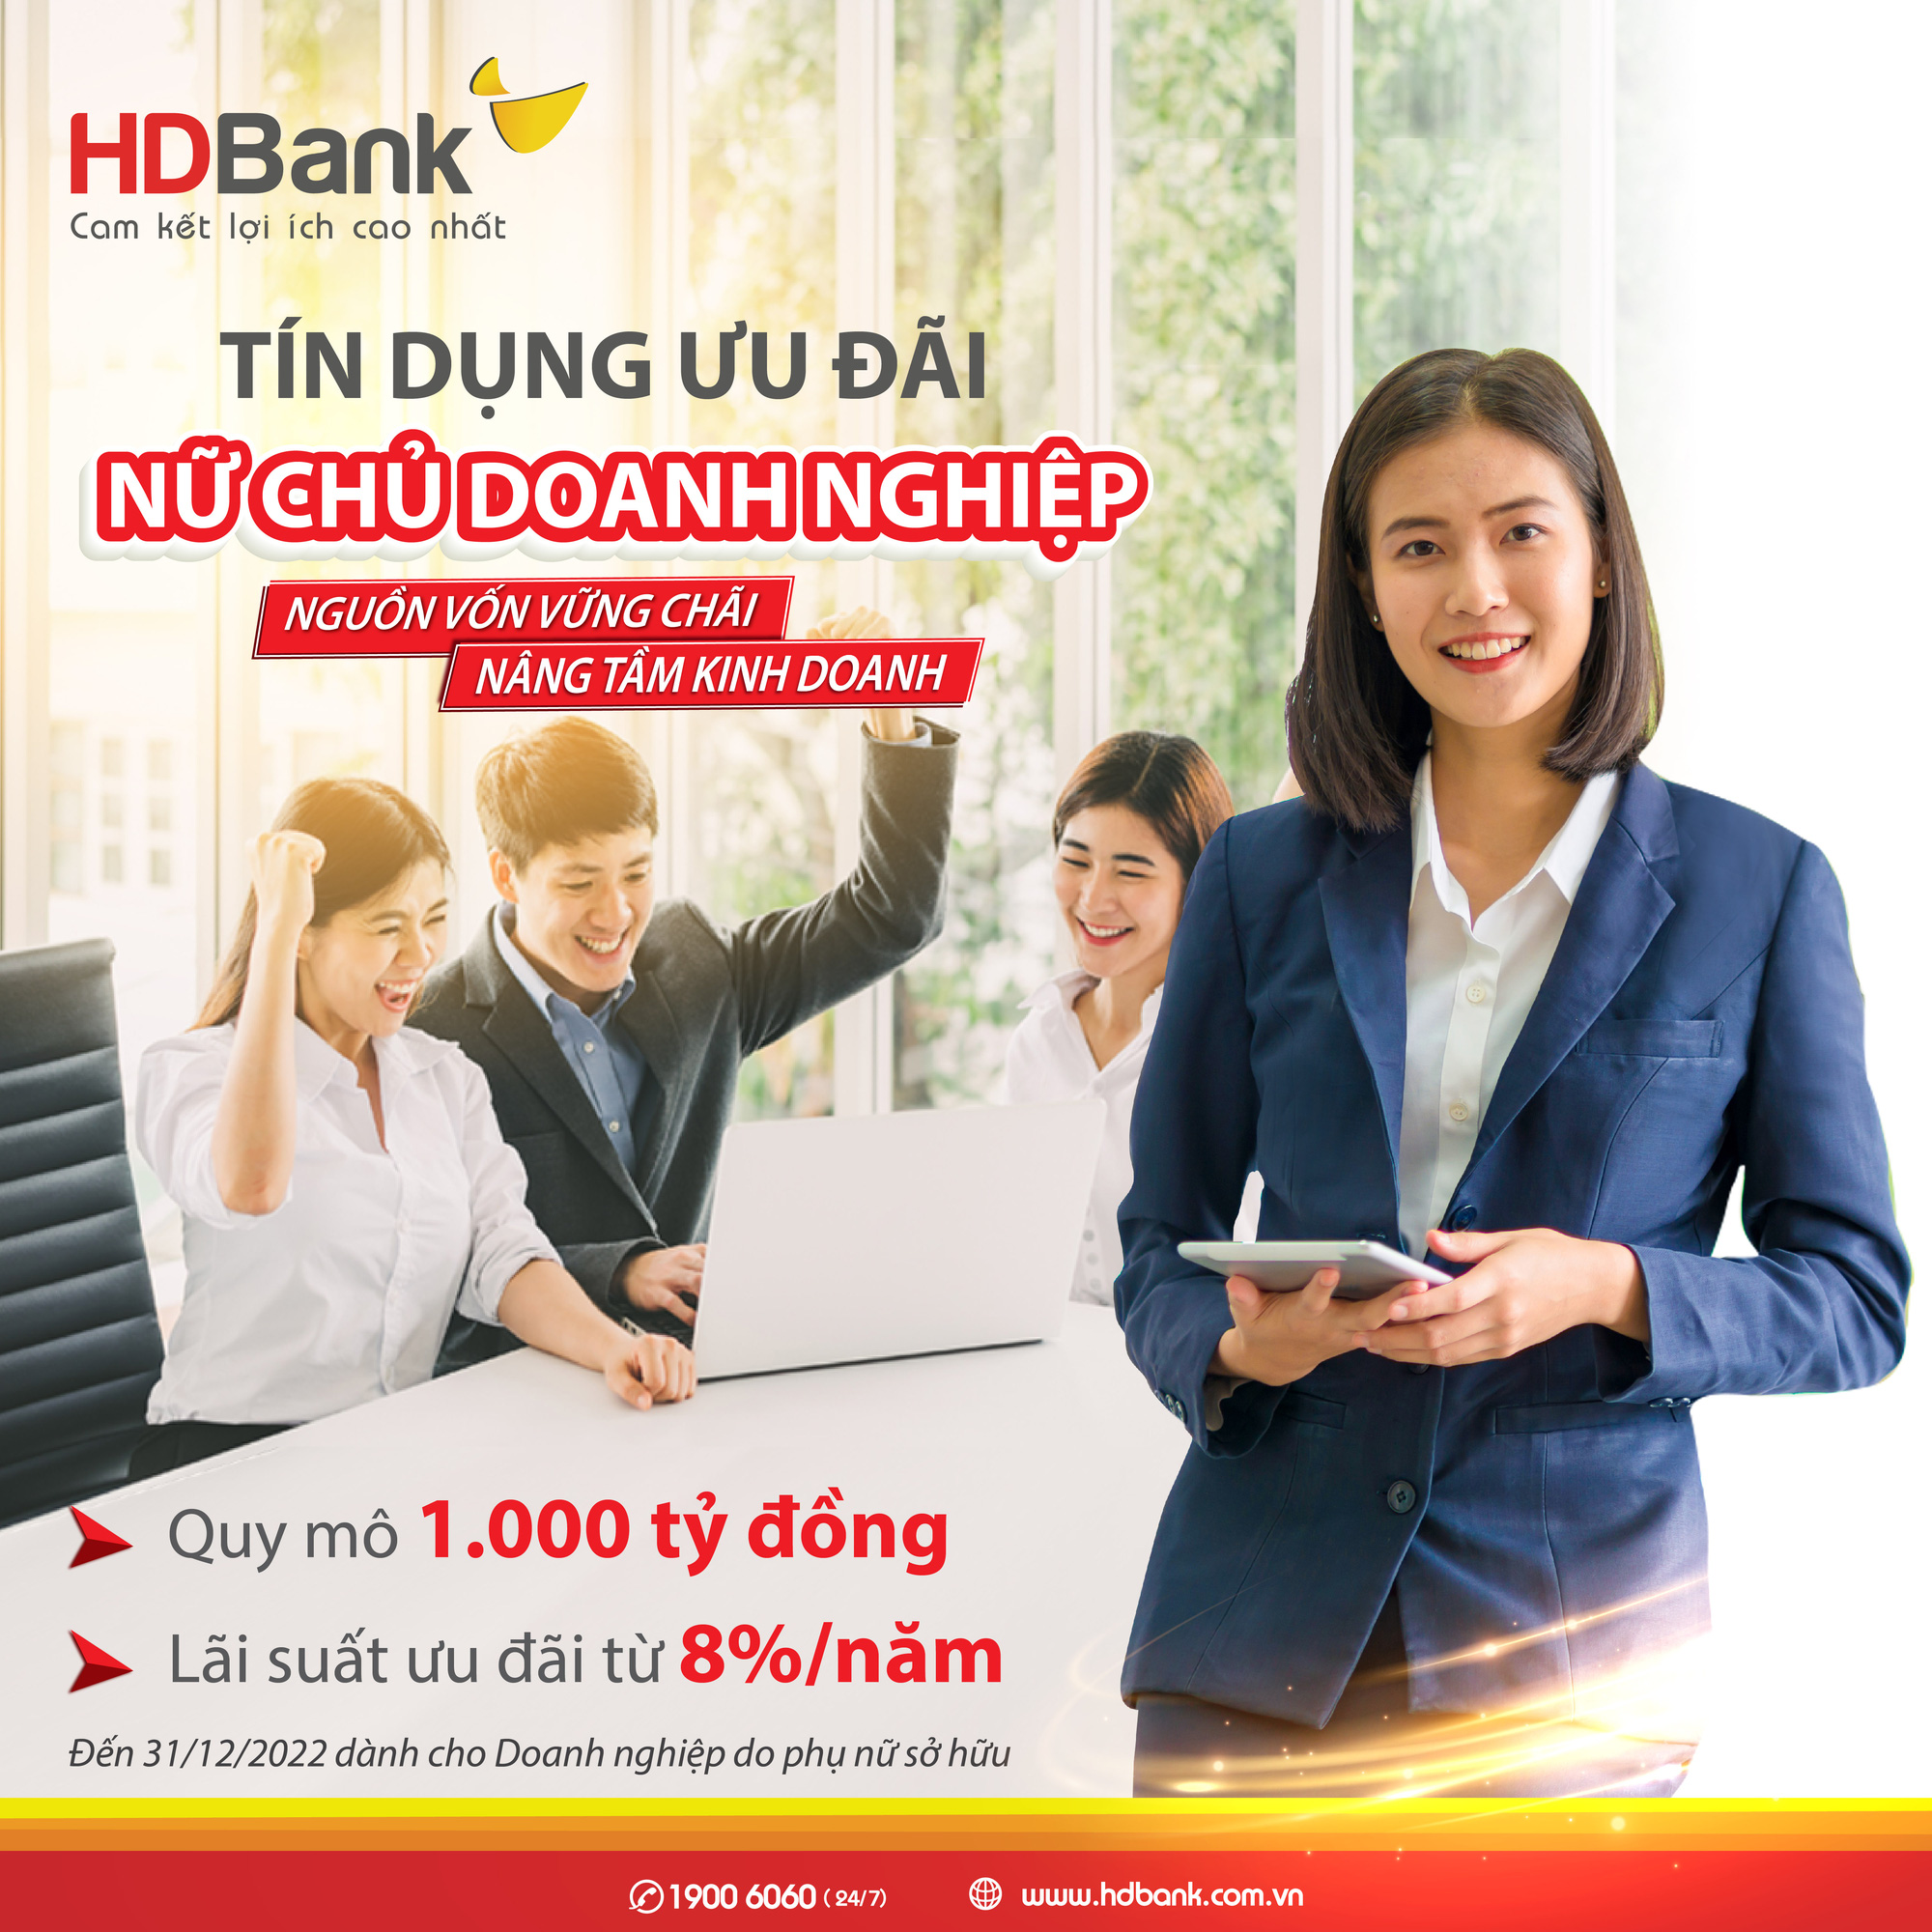 Đón 8/3, HDBank dành hơn 1.000 tỷ đồng ưu đãi lãi suất và hàng ngàn quà tặng đến khách hàng nữ - Ảnh 2.